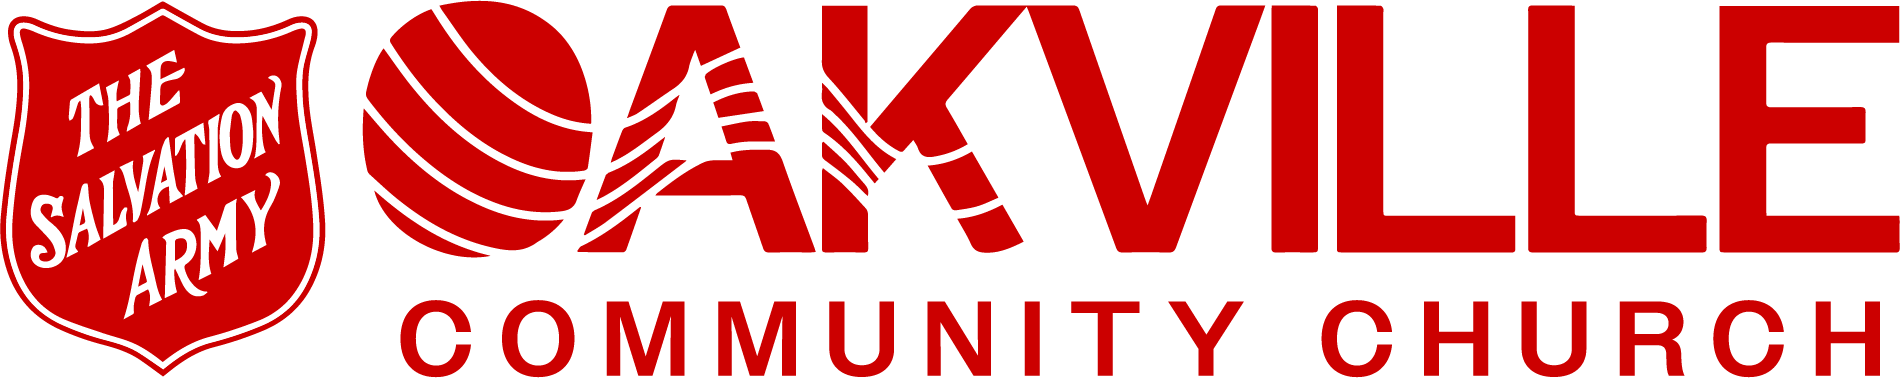 TSA Oakville Community Church logo